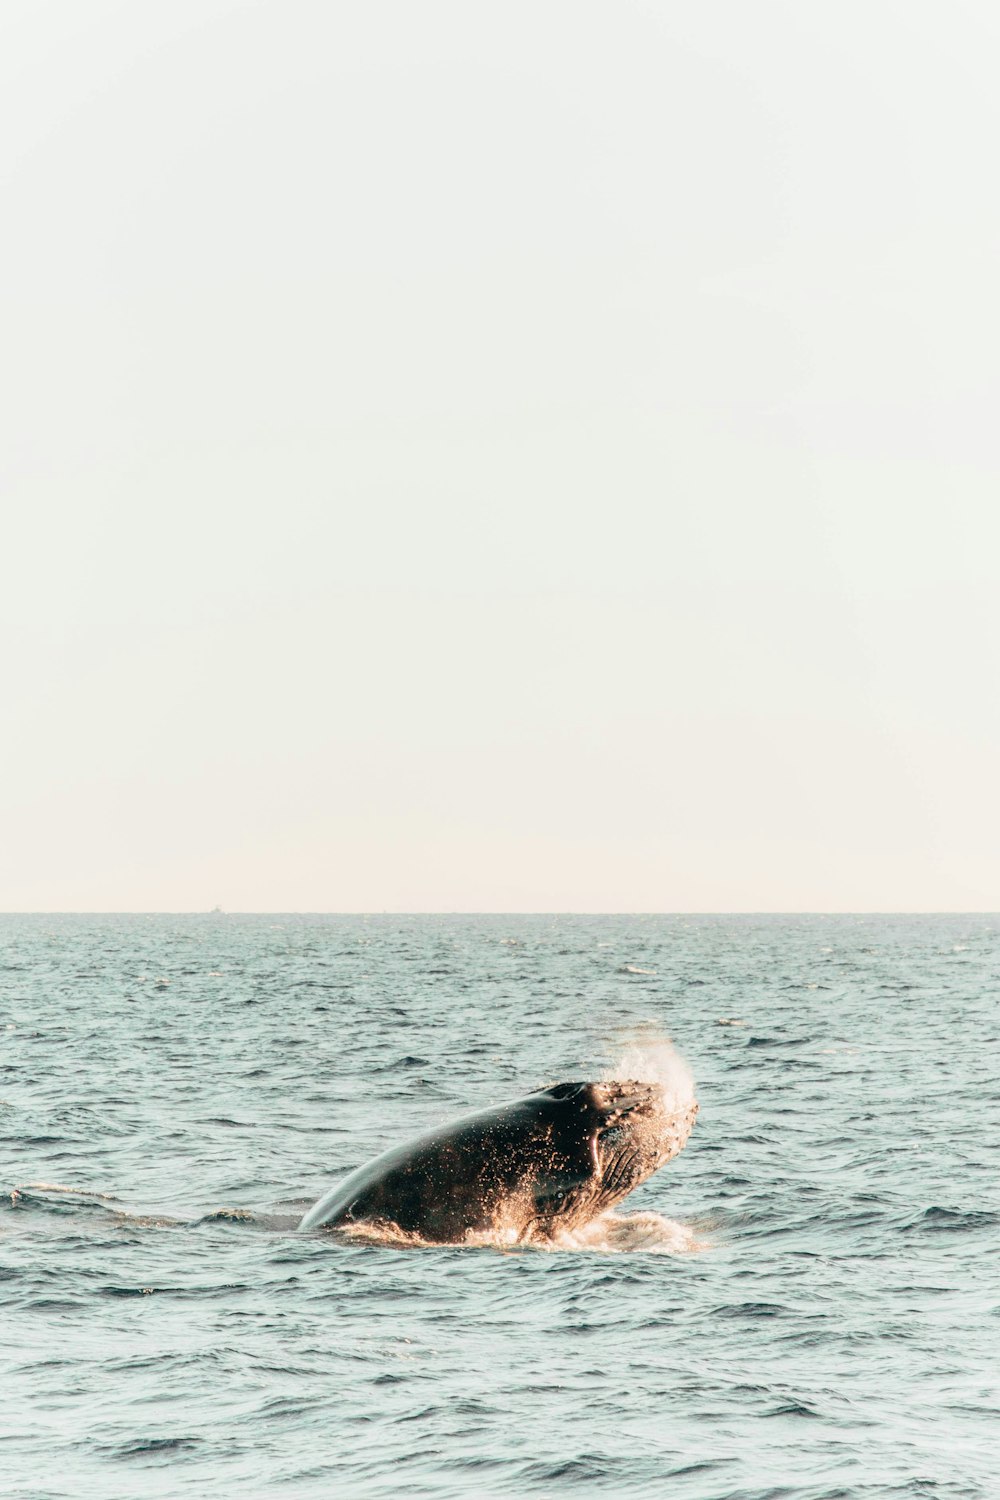 ザトウクジラが海に飛び込む